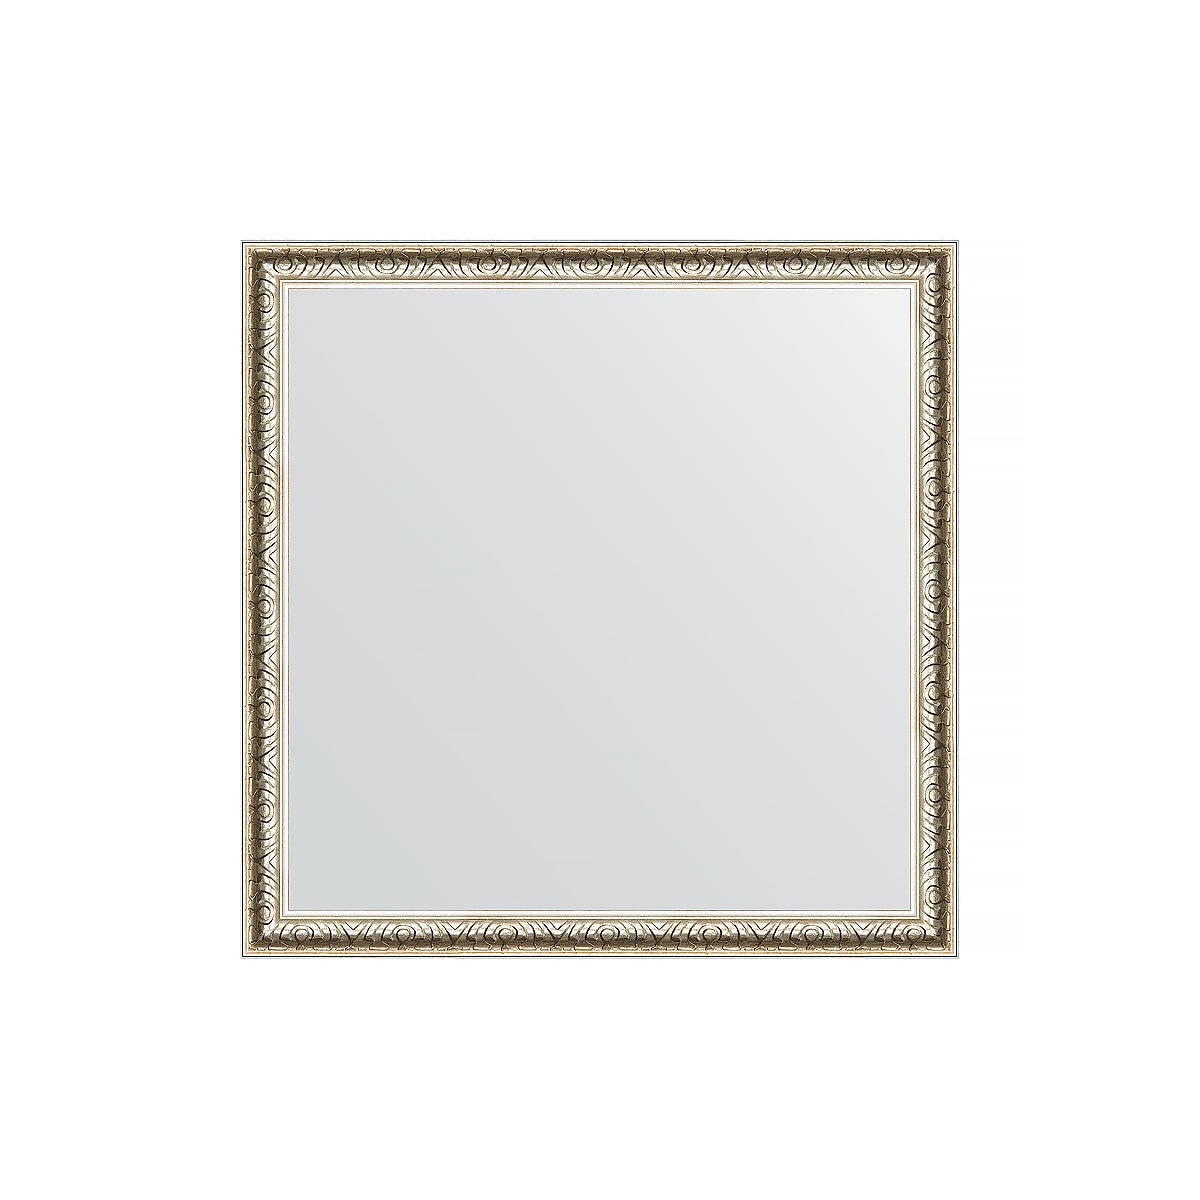 Зеркало в багетной раме Evoform мельхиор 41 мм 61х61 см зеркало evoform definite 61х61 мельхиор